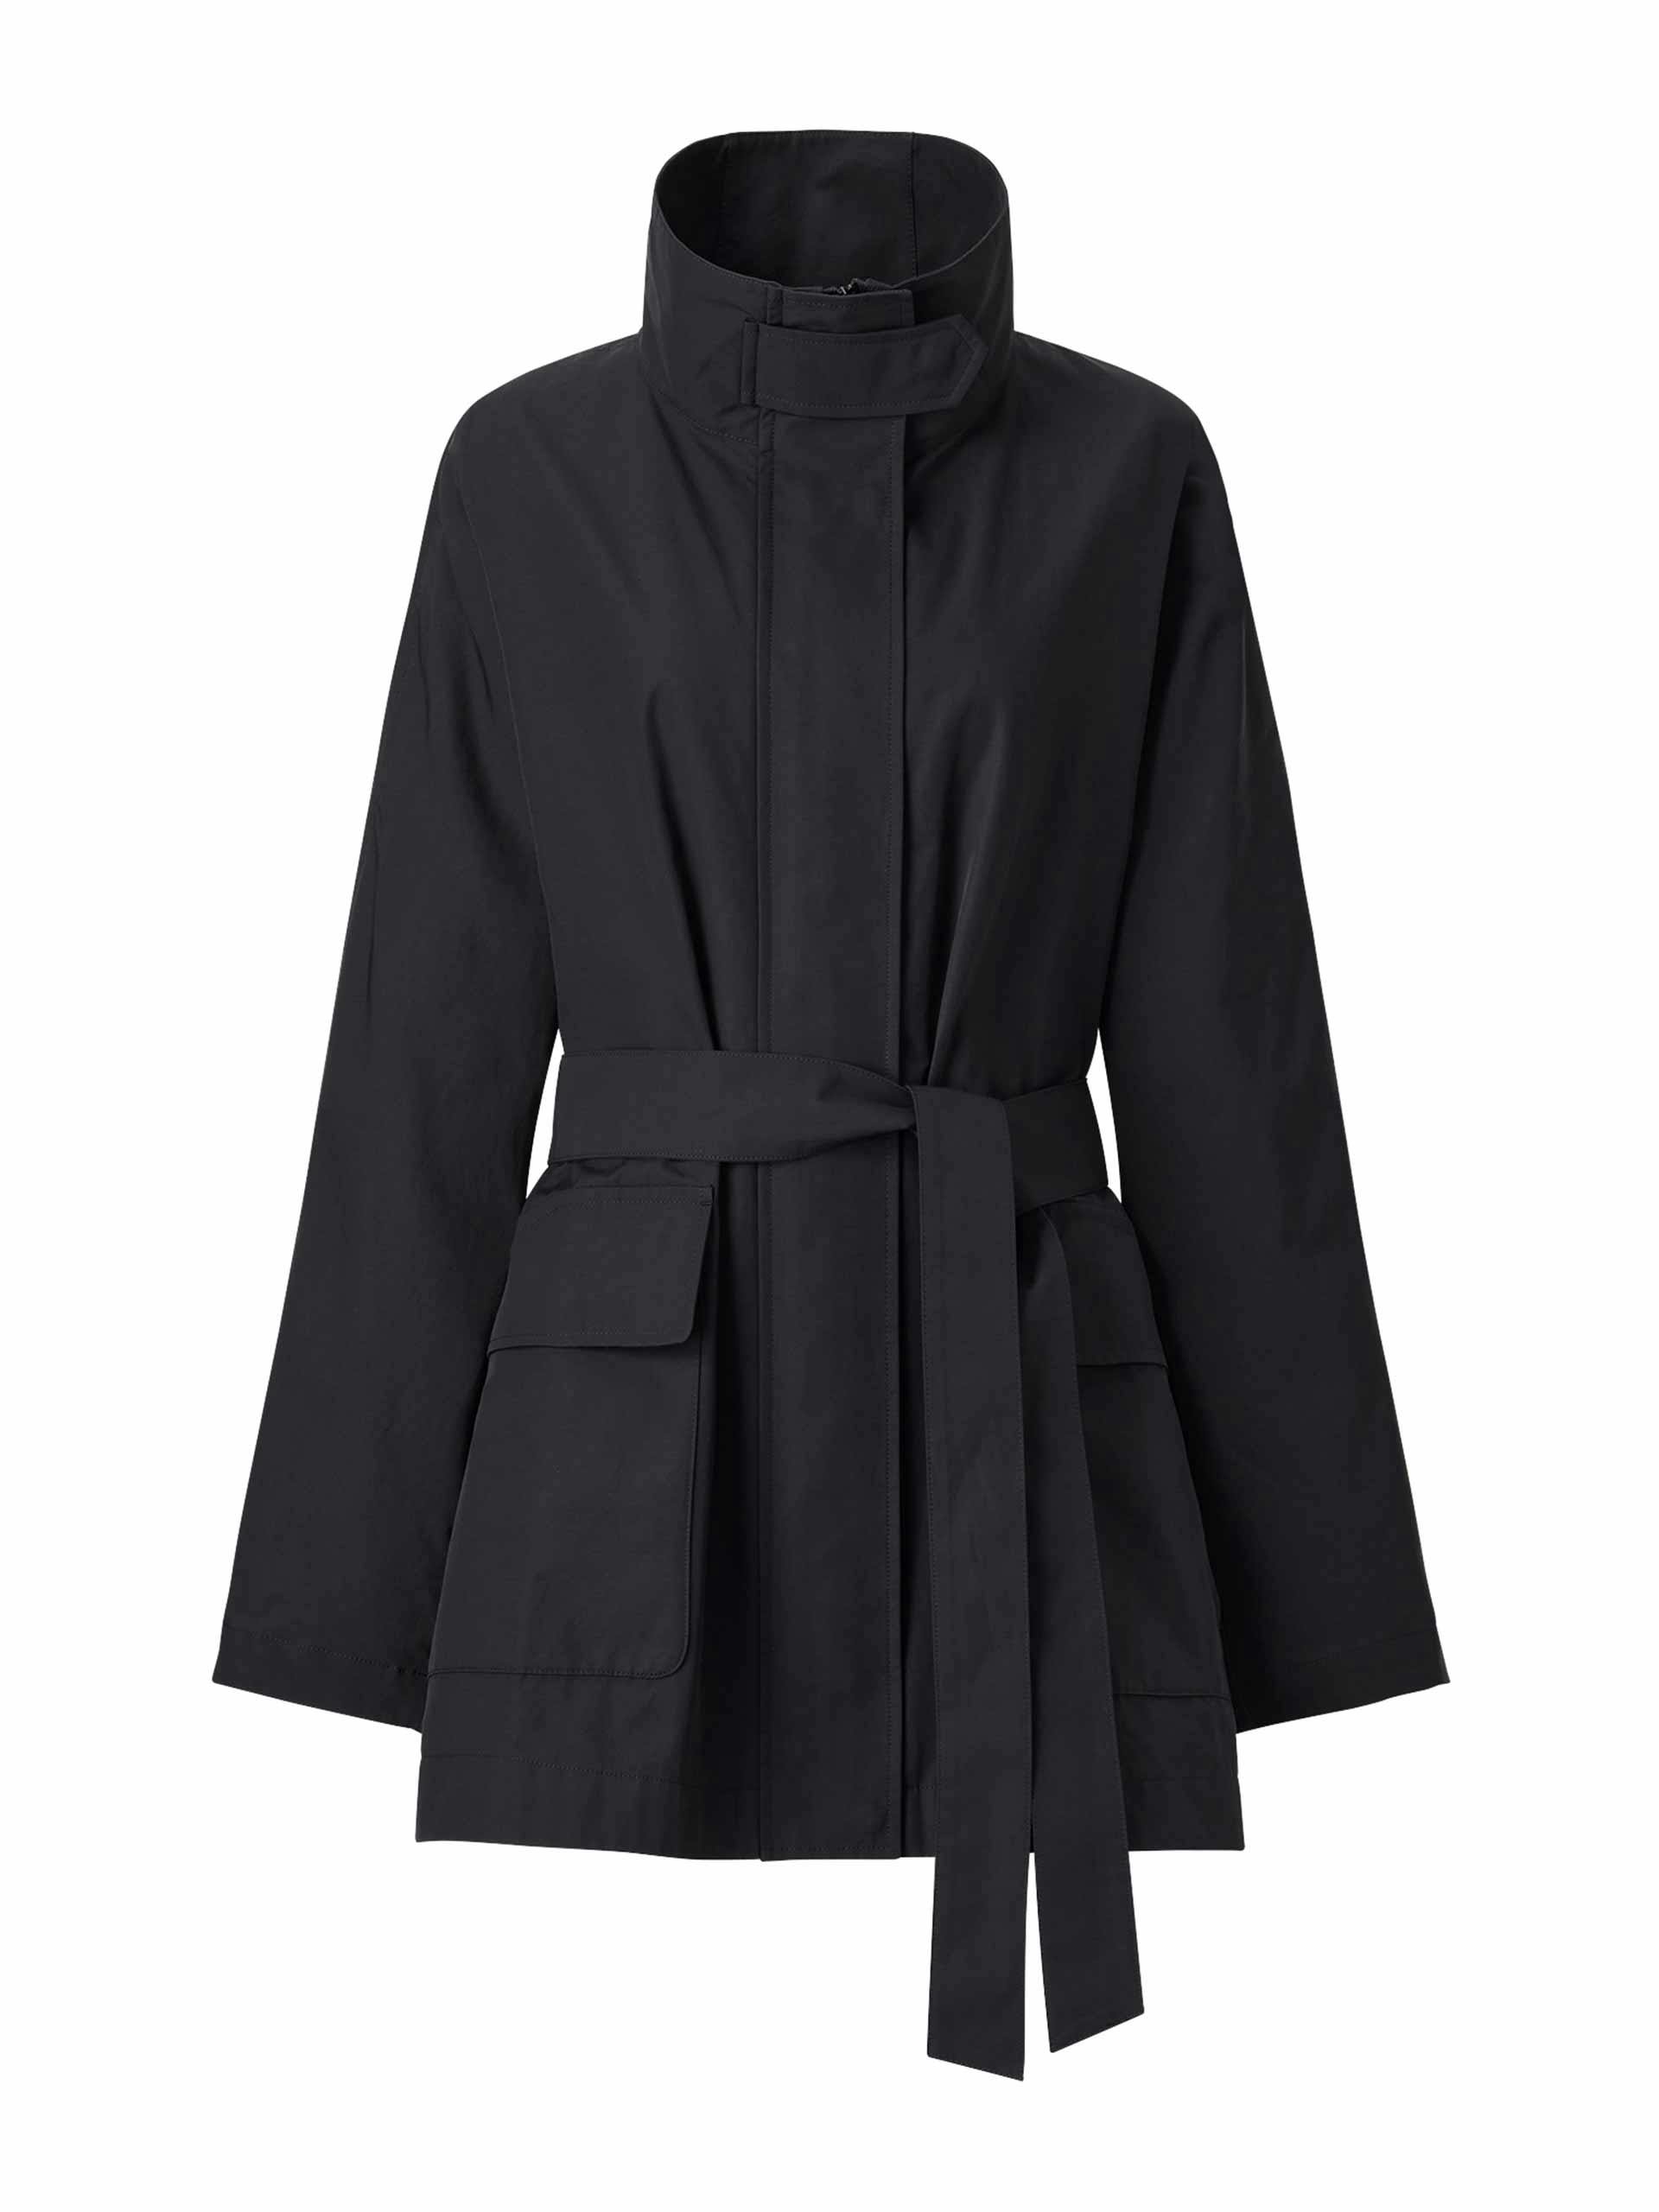 Black utility oversized short coat